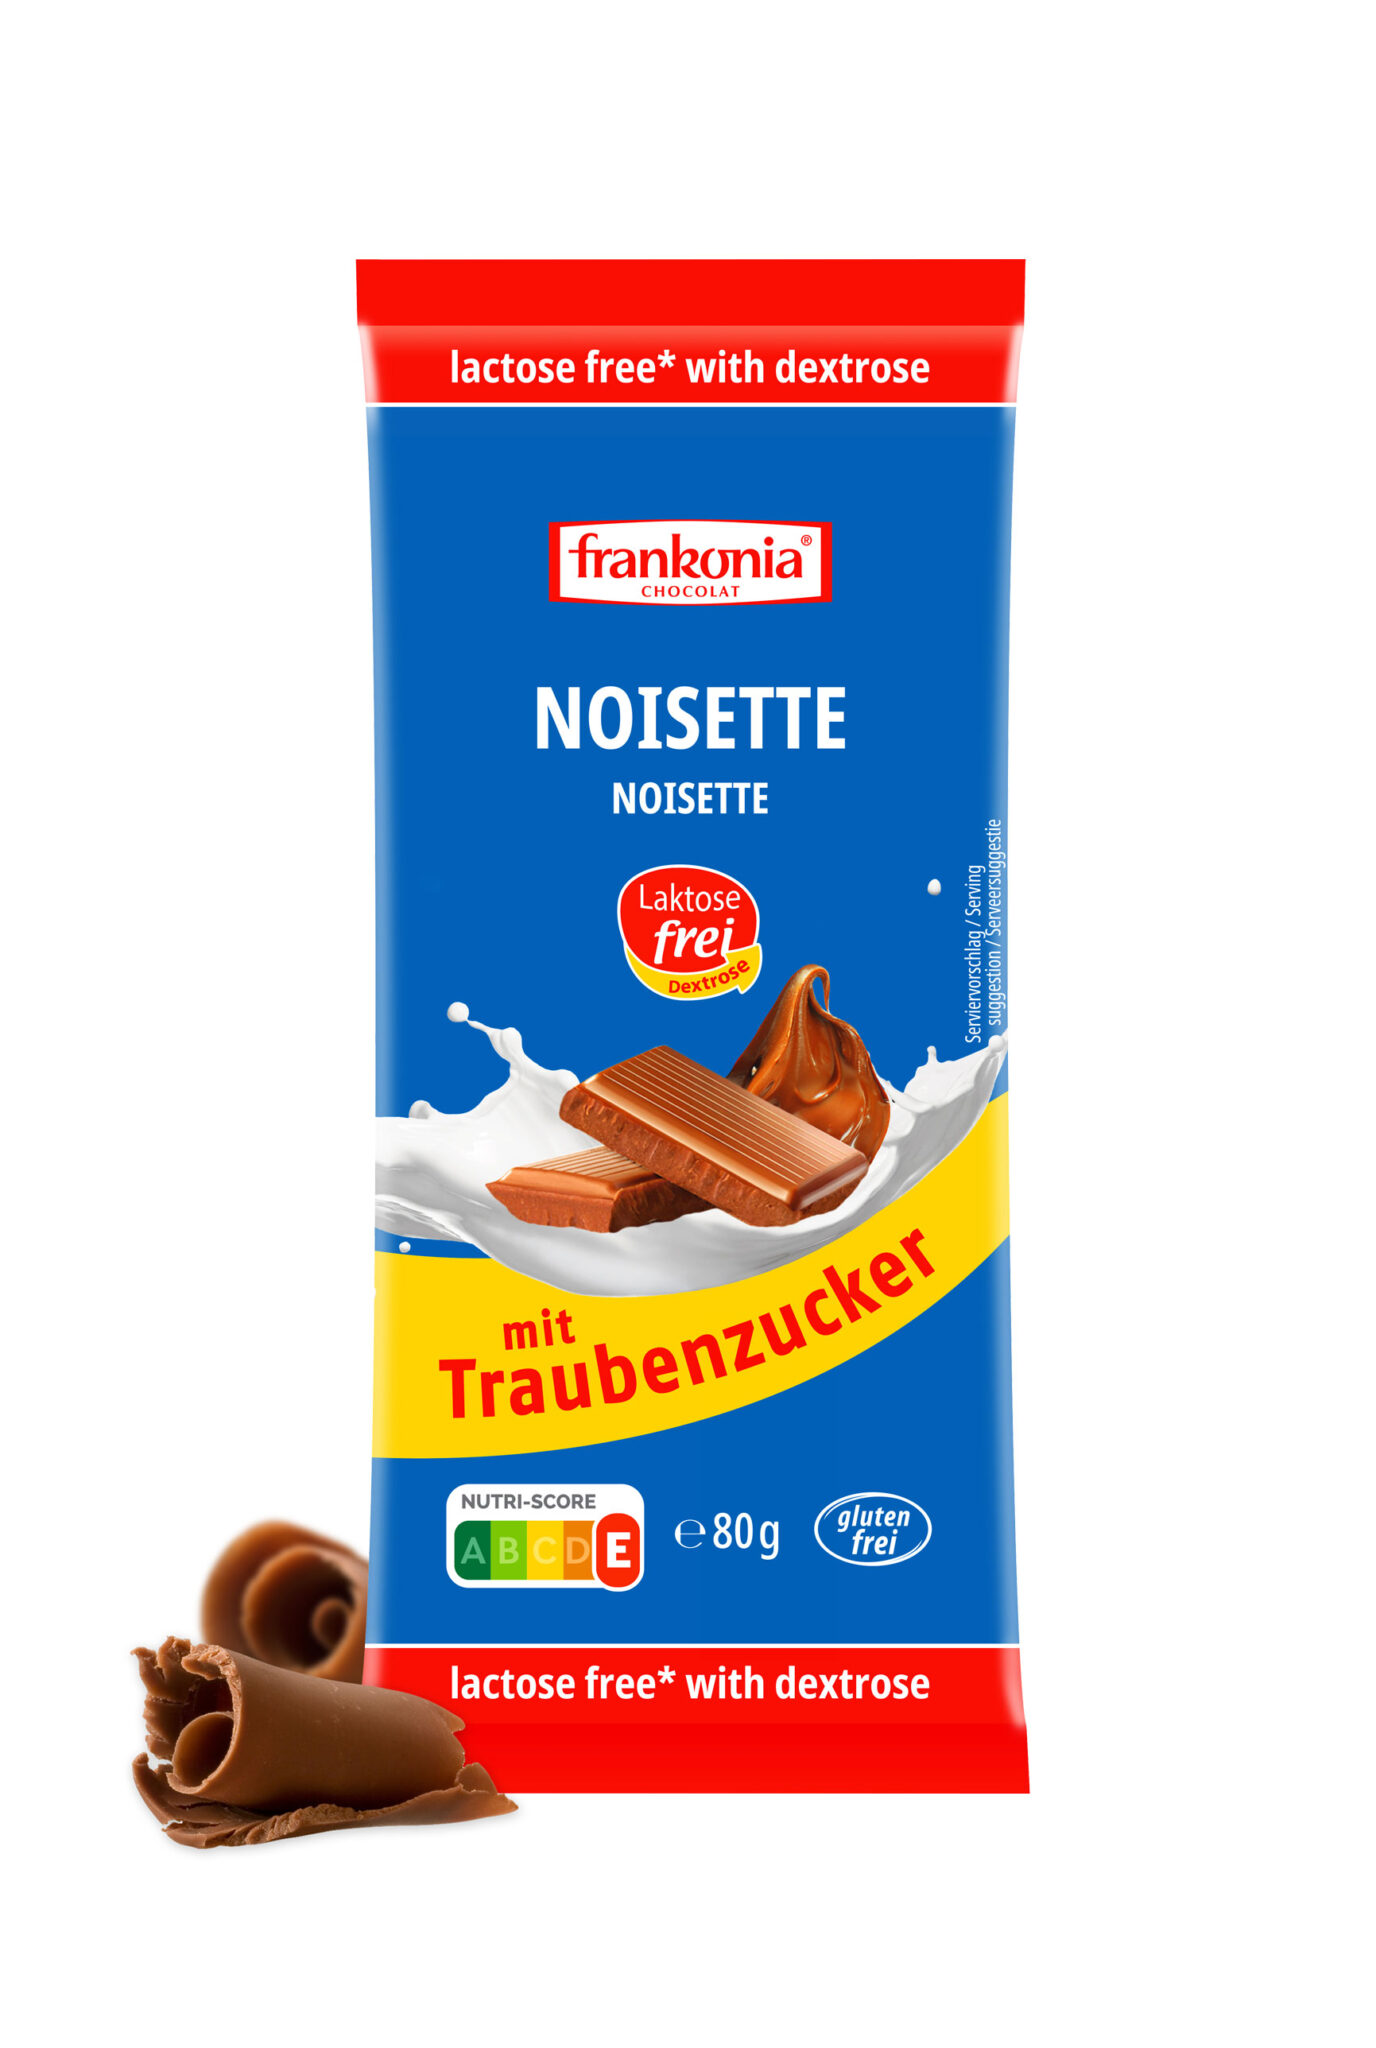 Noisette Dextrose laktosefrei* - Frankonia Schokoladenwerke